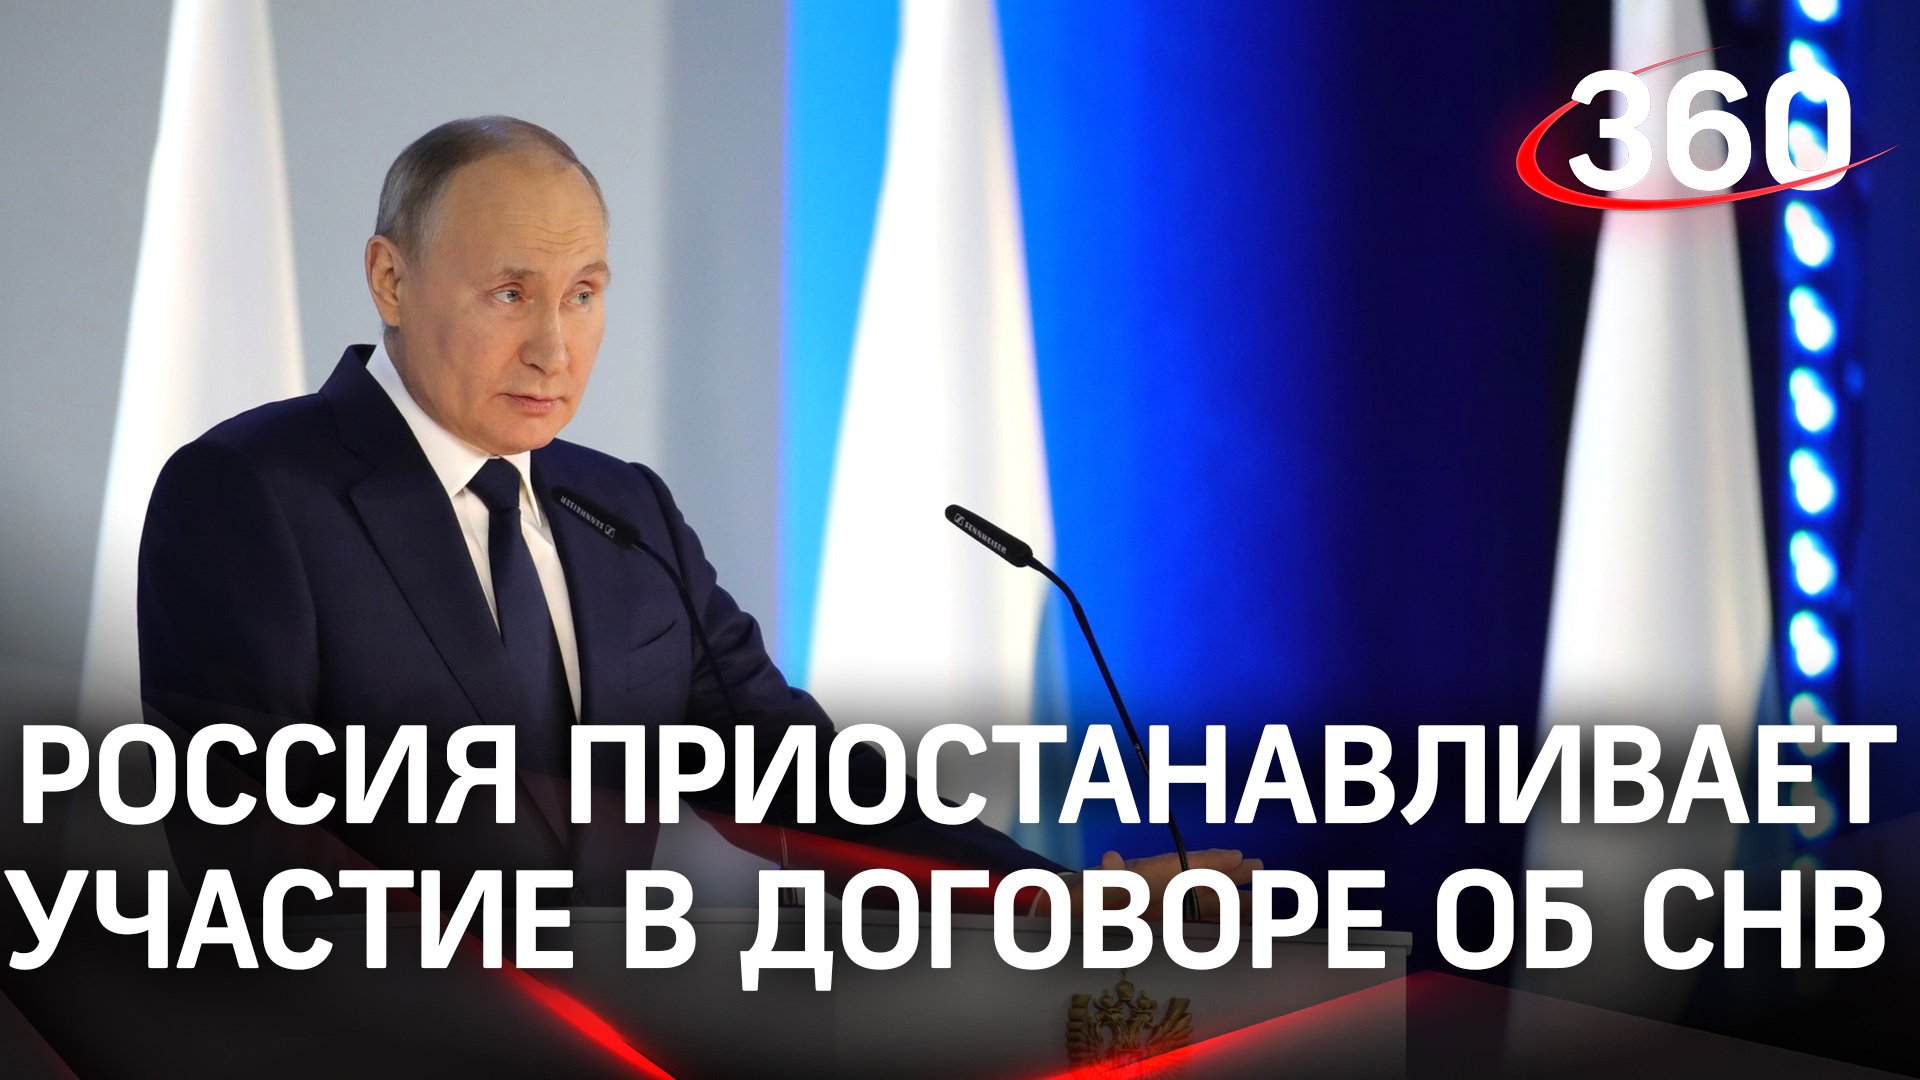 Россия приостанавливает свое участие в Договоре о стратегических наступательных вооружениях - Путин